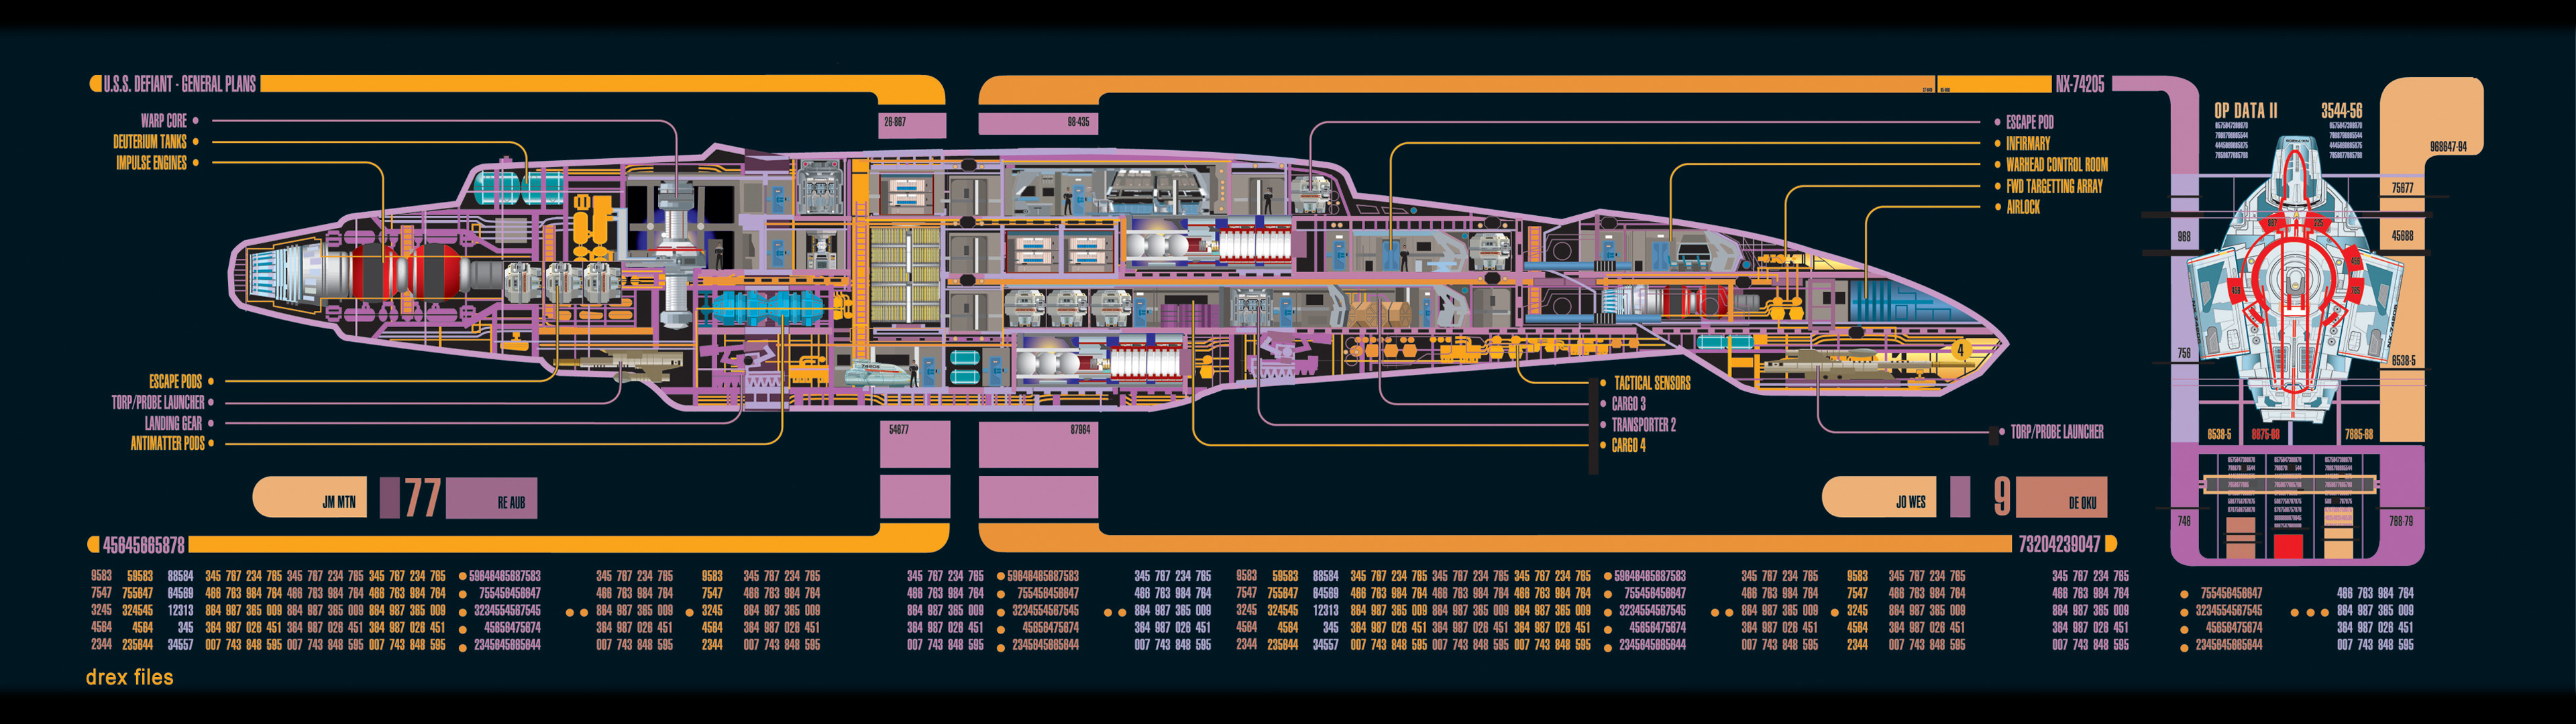 3840x1080 Star Trek Computer Wallpapers, Desktop Backgrounds |  | ID .